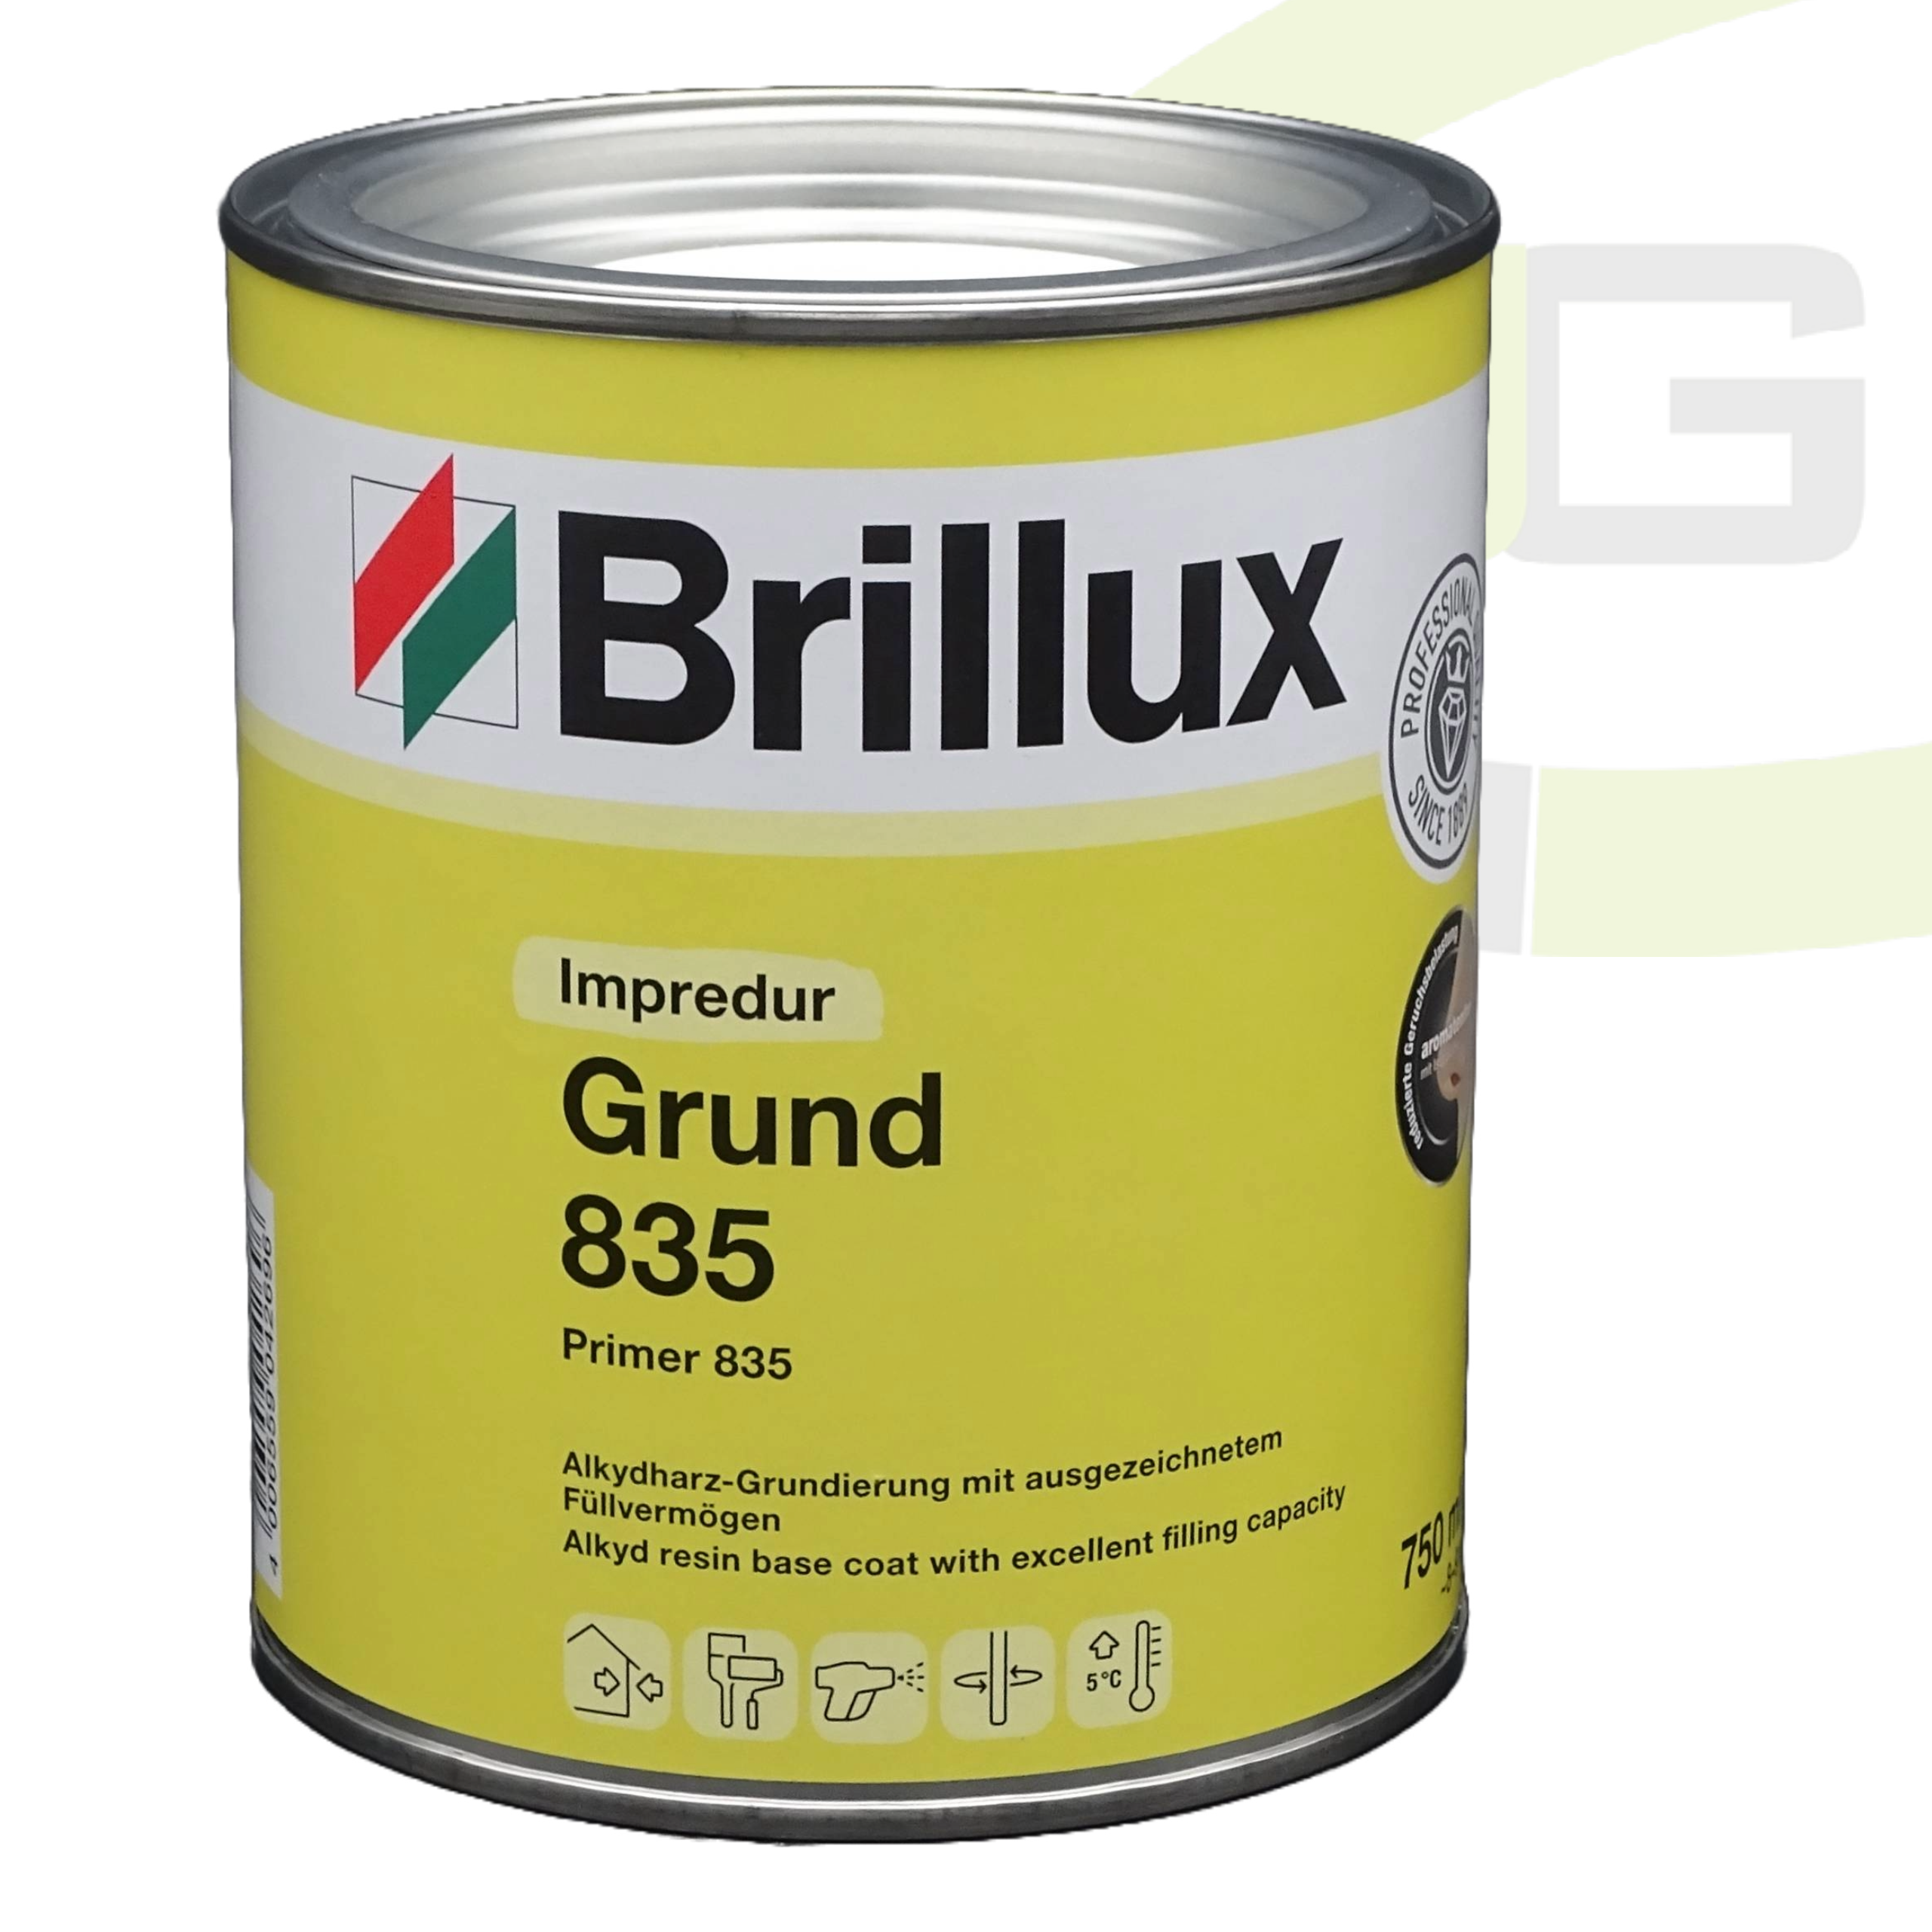 Brillux Impredur Grund 835 weiß - 750ml / Lösungsmittelhaltige Grundierung